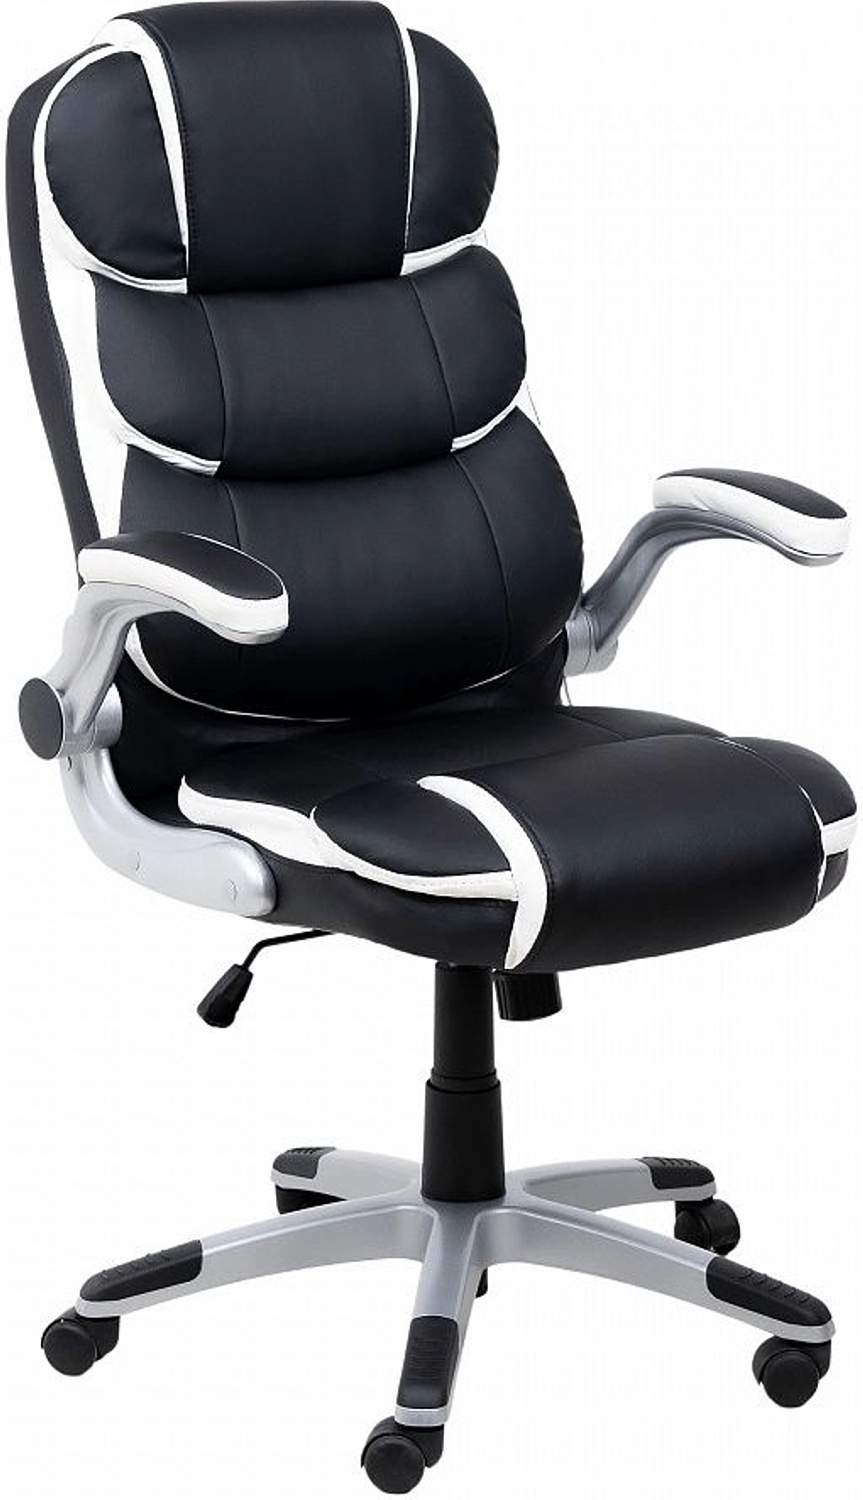 Кресло компьютерное AKSHOME Antony Eco черный с белыми вставками (86376)